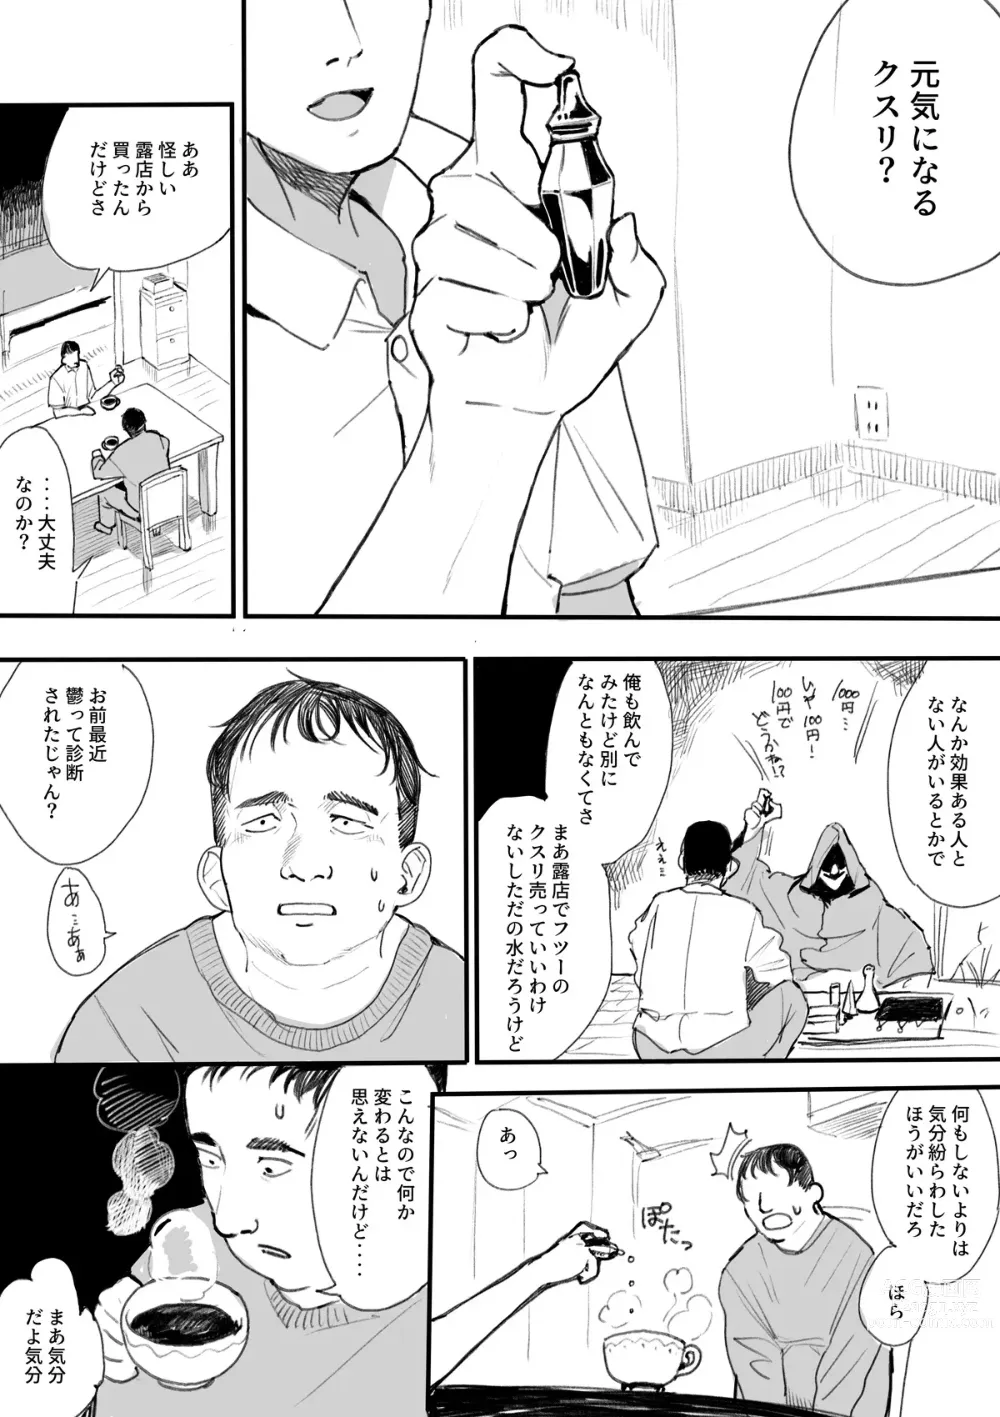 Page 2 of doujinshi Succubus-ka